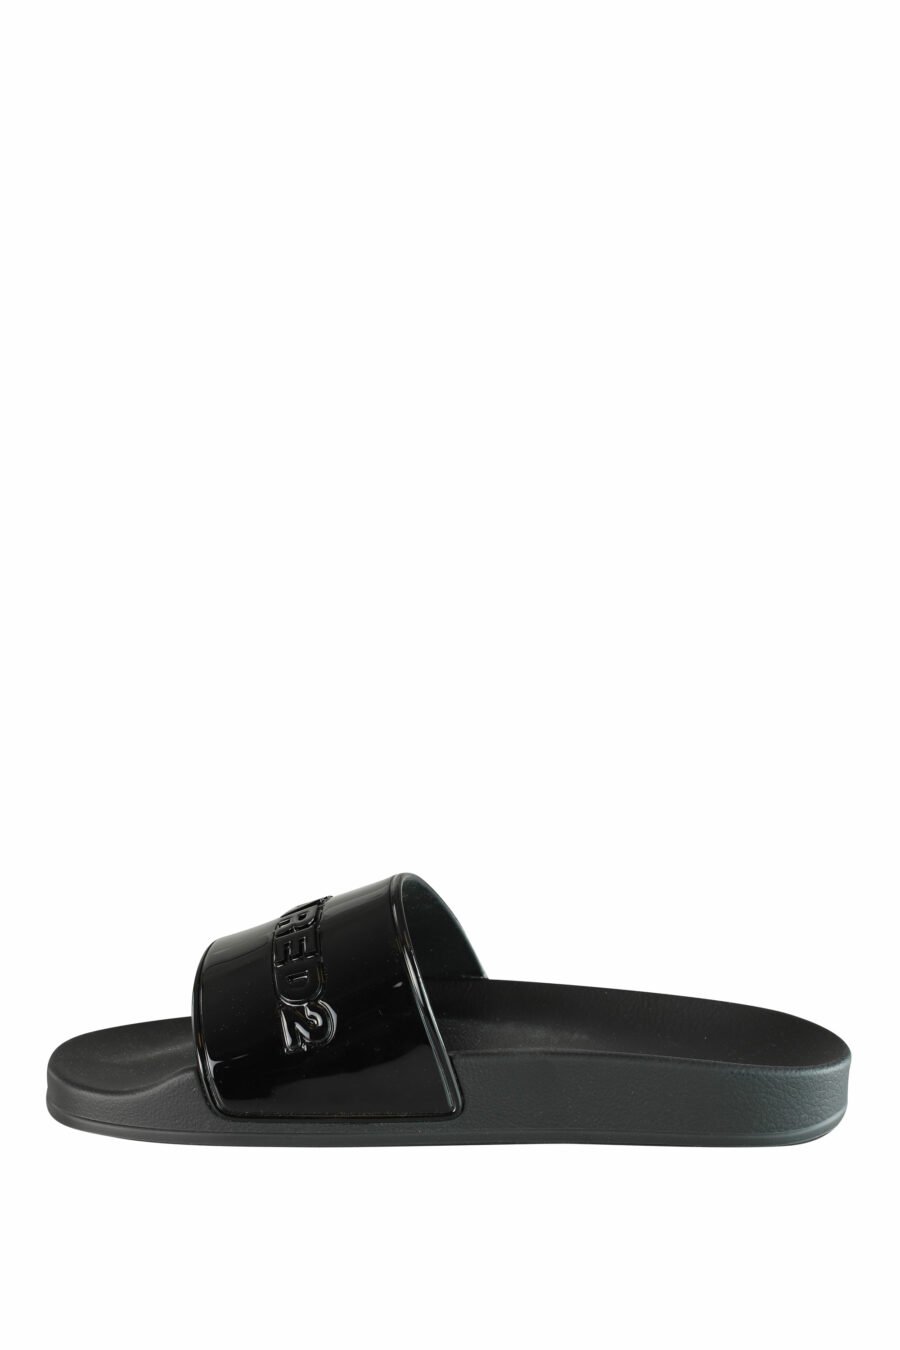 Shiny black flip flops with black maxilogo - IMG 1337